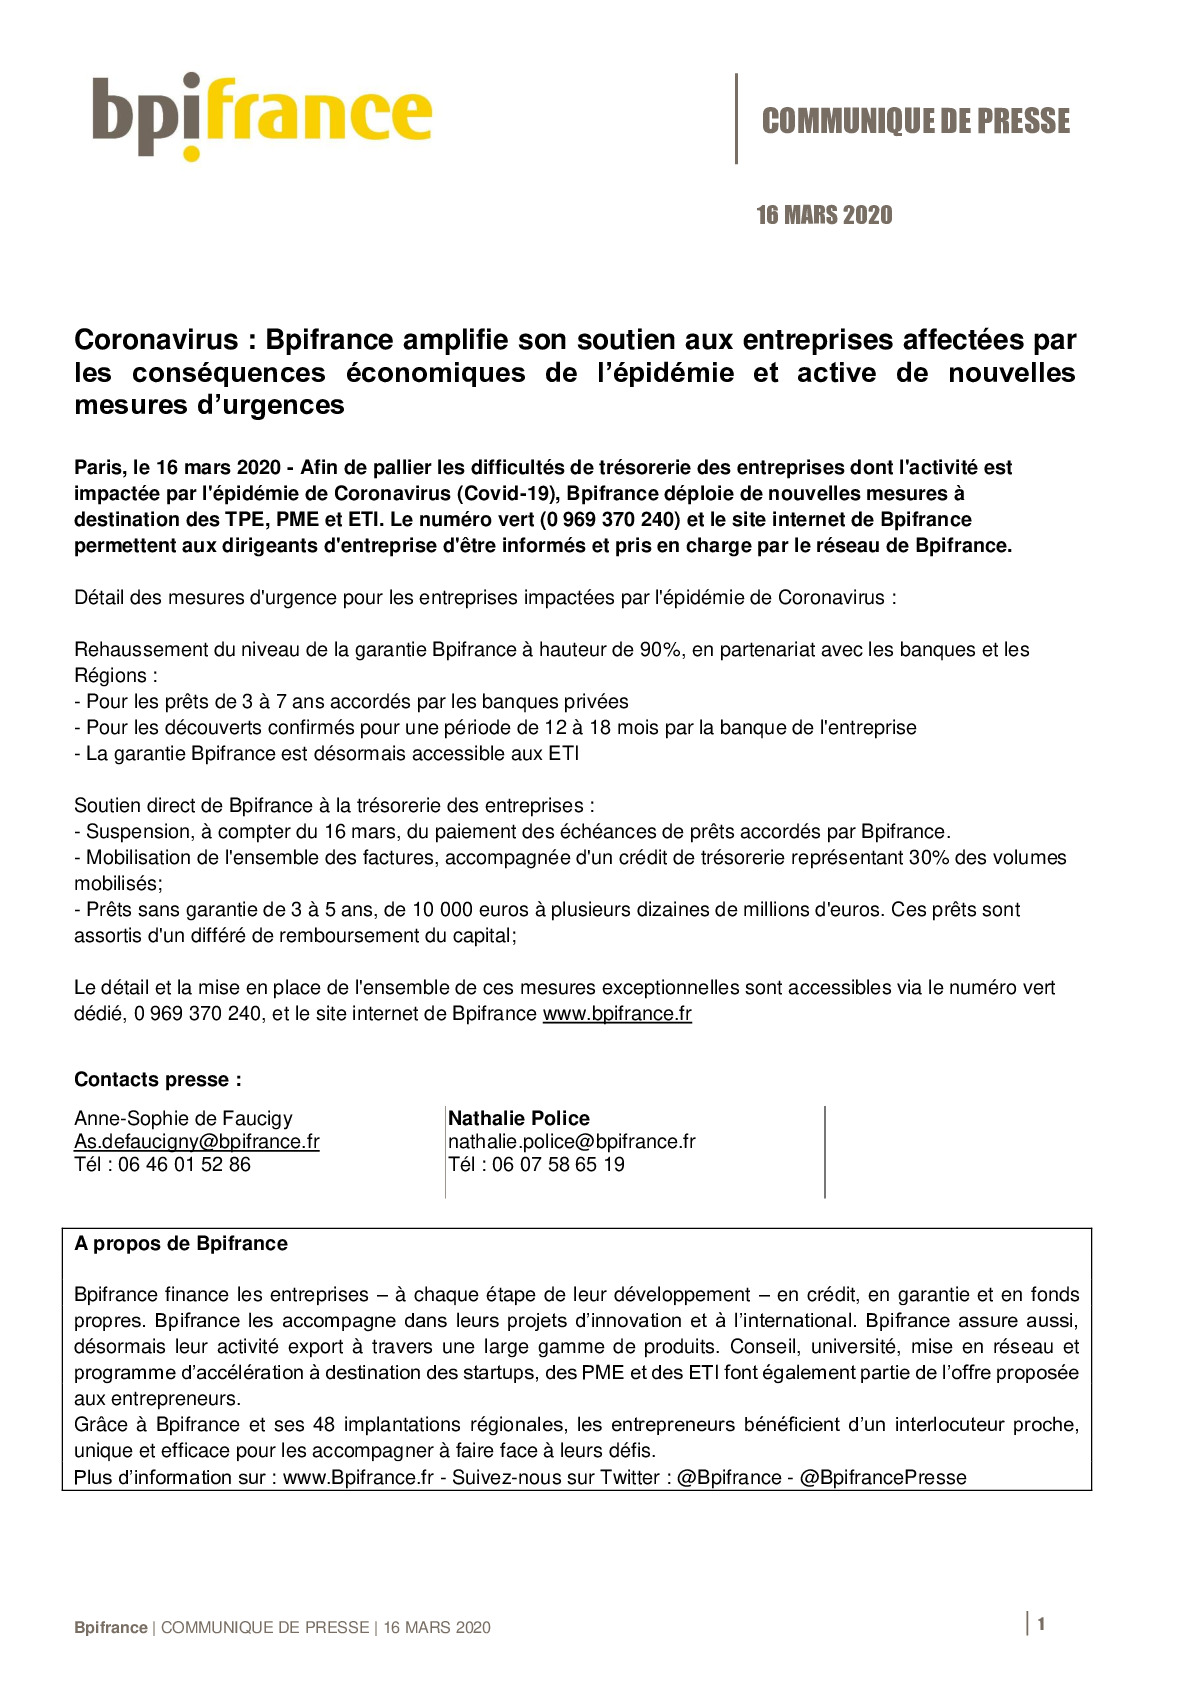 2020 03 16 – CP nouvelles mesures durgences – Coronavirus-pdf